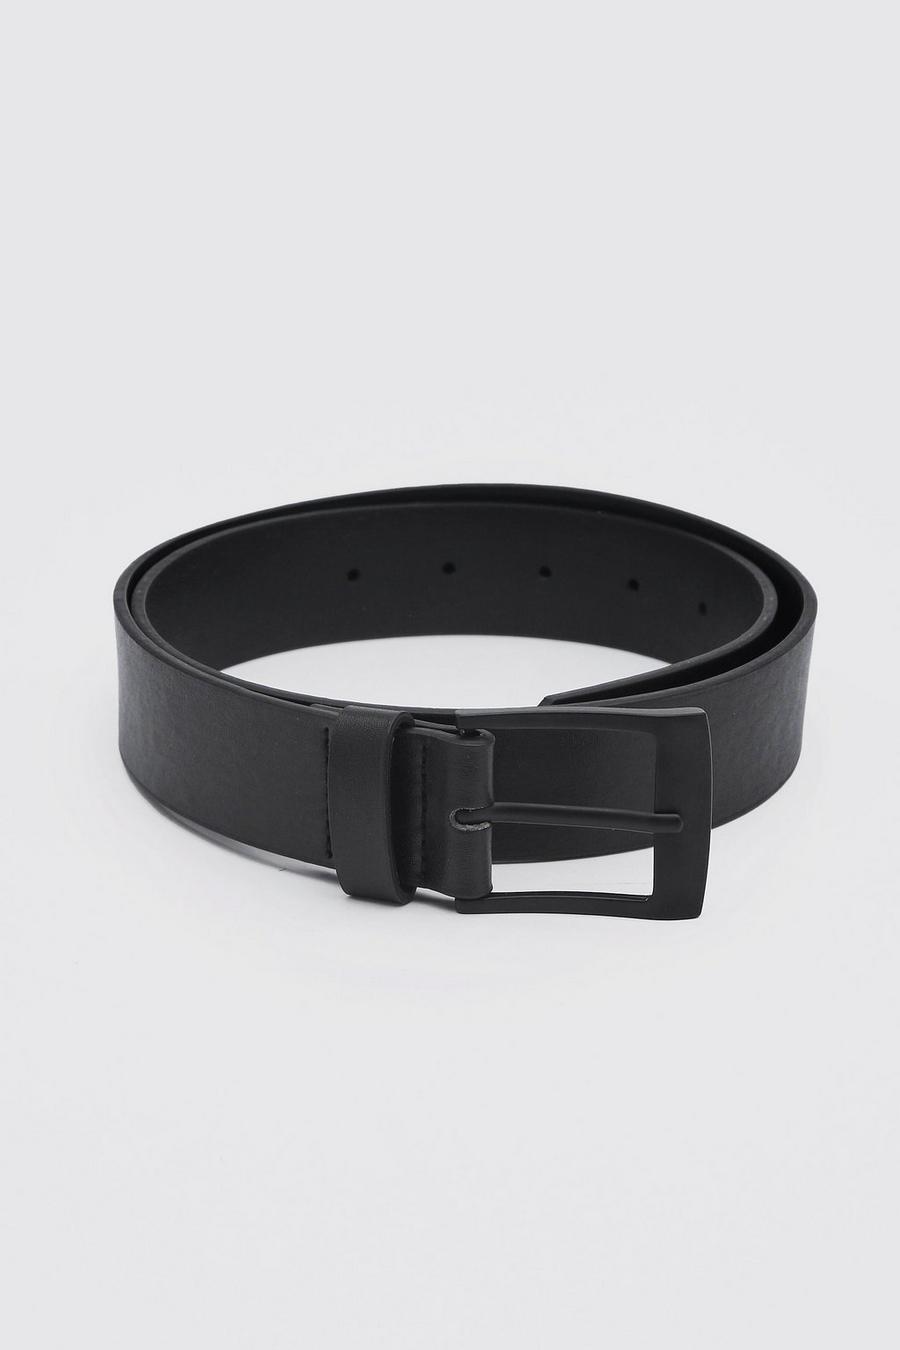 Matte Black Rectangle Buckle Leather Look Belt image number 1